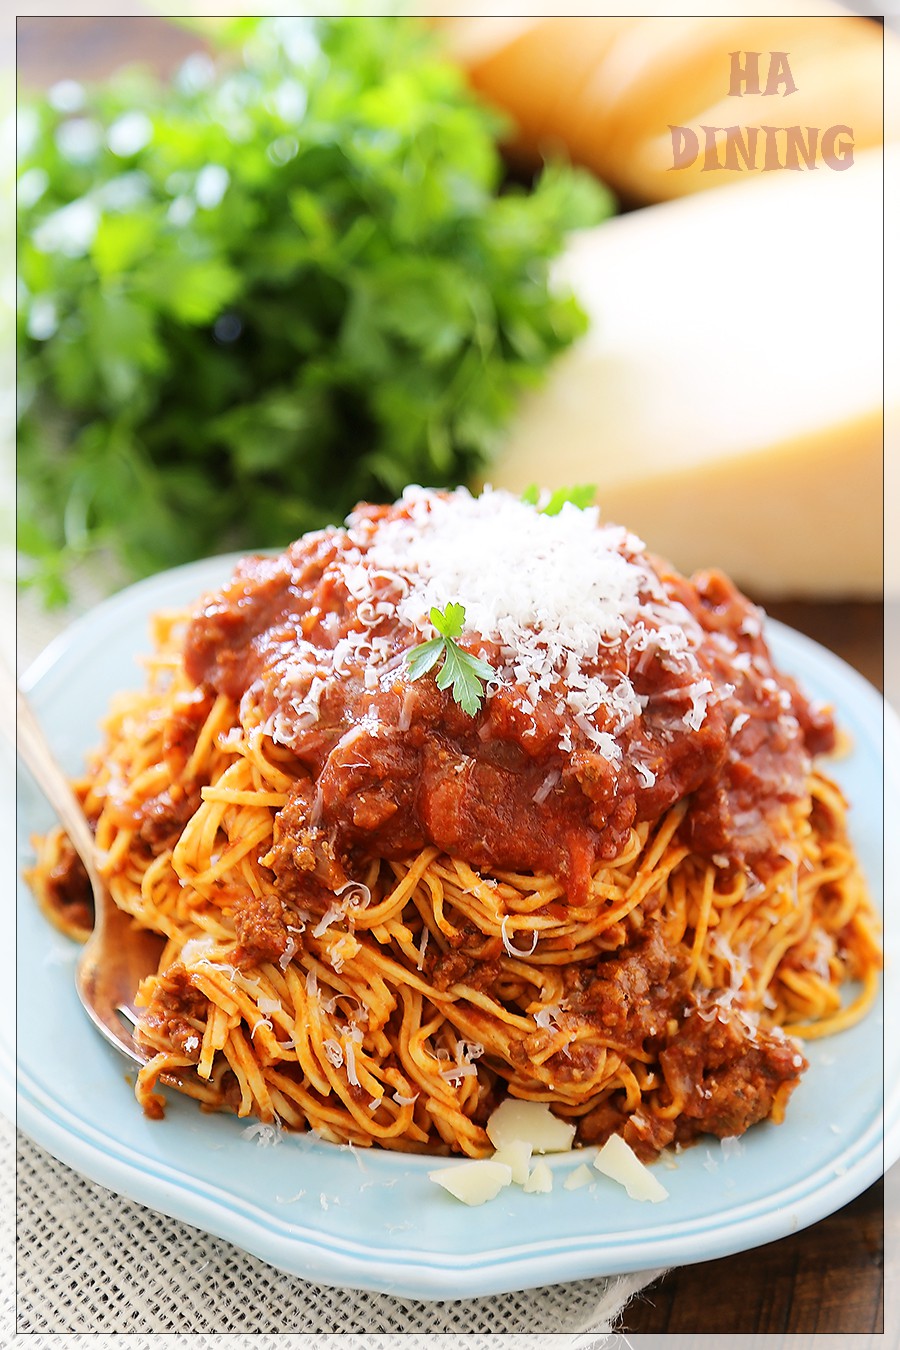 طريقة عمل باستا بولونيز | Spaghetti Bolognese Pasta | ᕼᗩ ᗪIᑎIᑎG